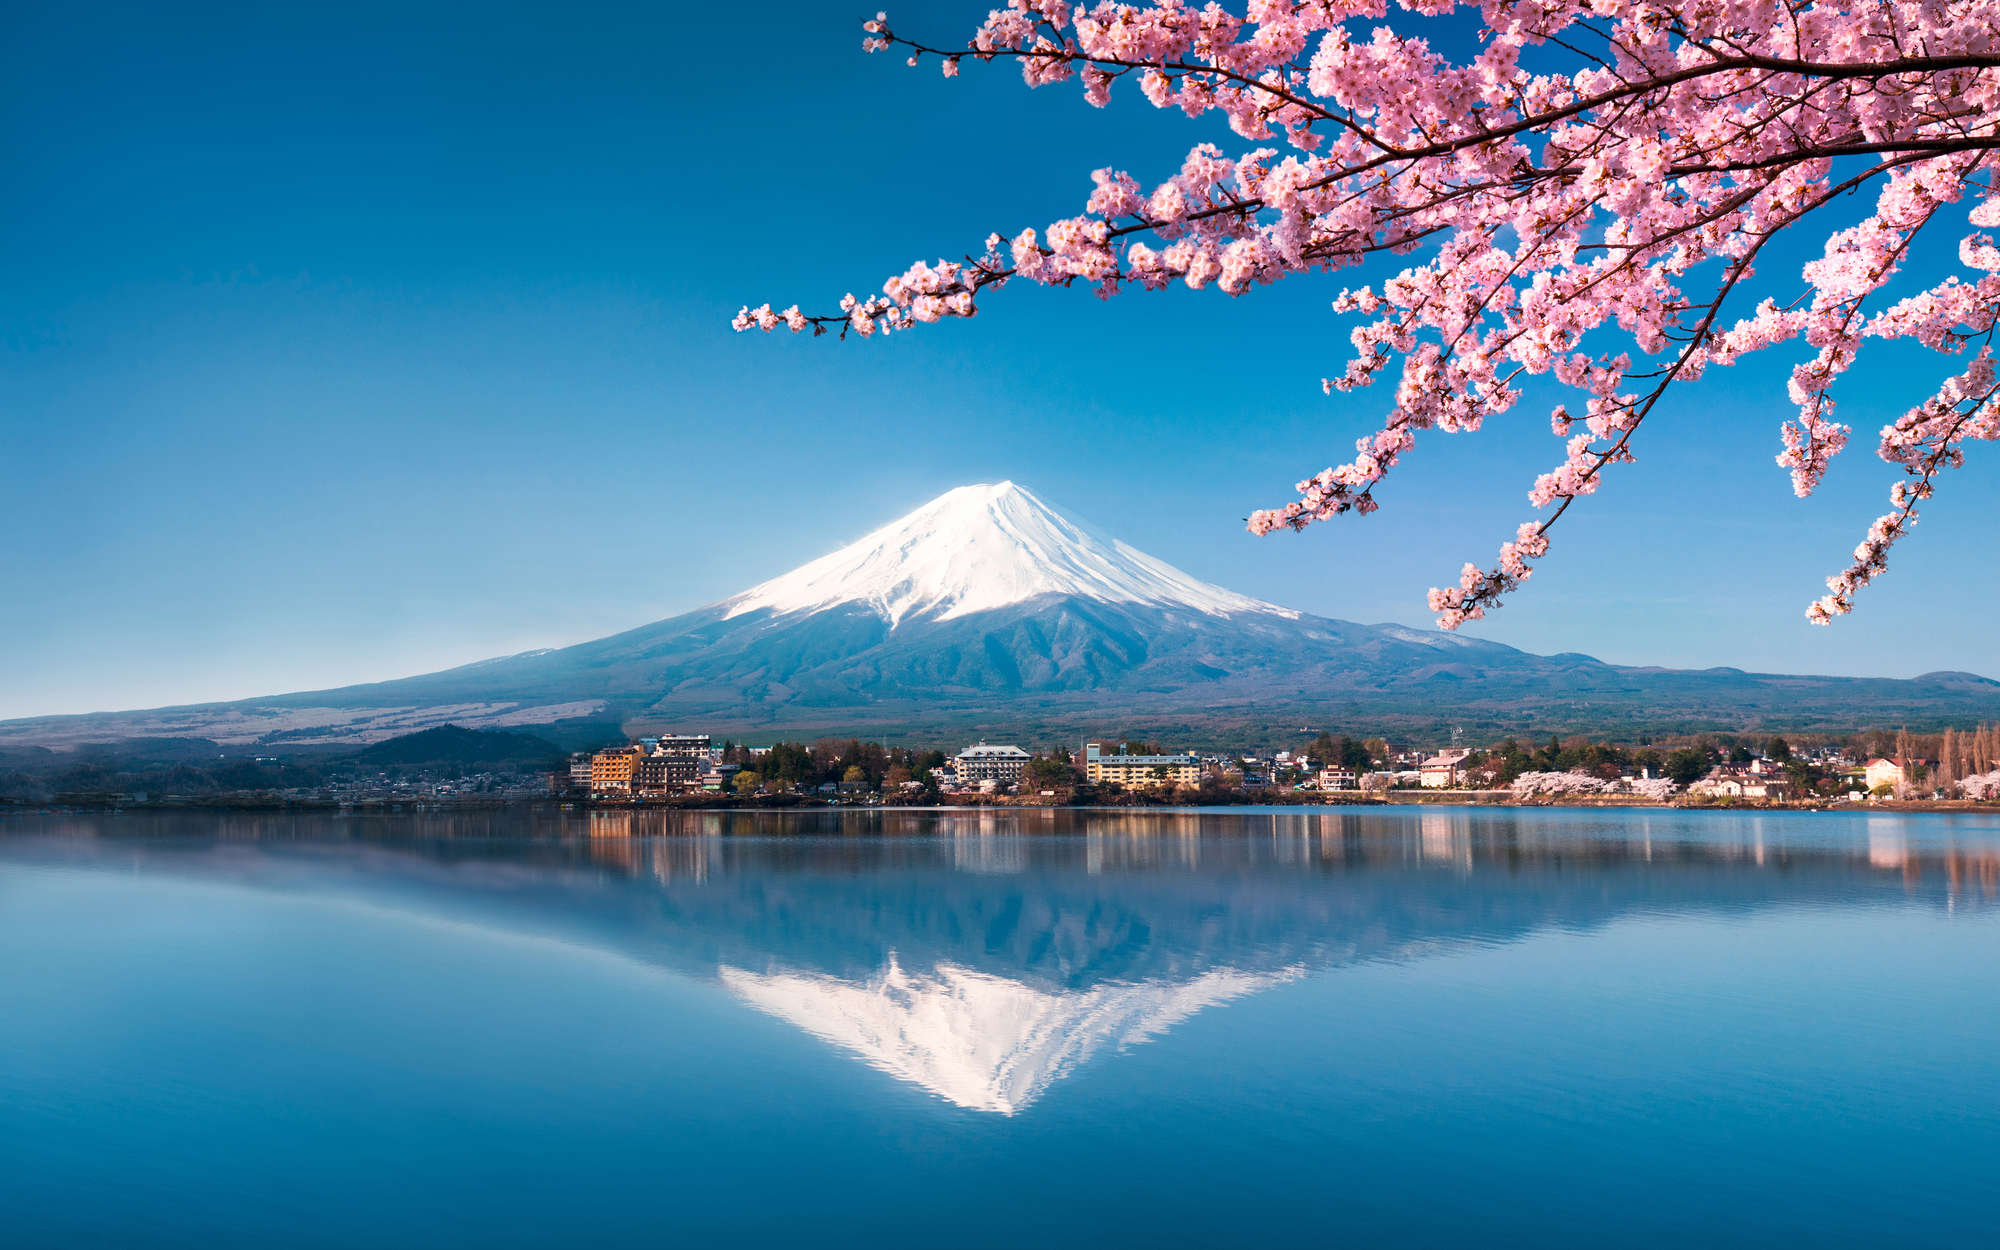             Fotomural Volcán Fuji en Japón - tejido no tejido liso de alta calidad
        